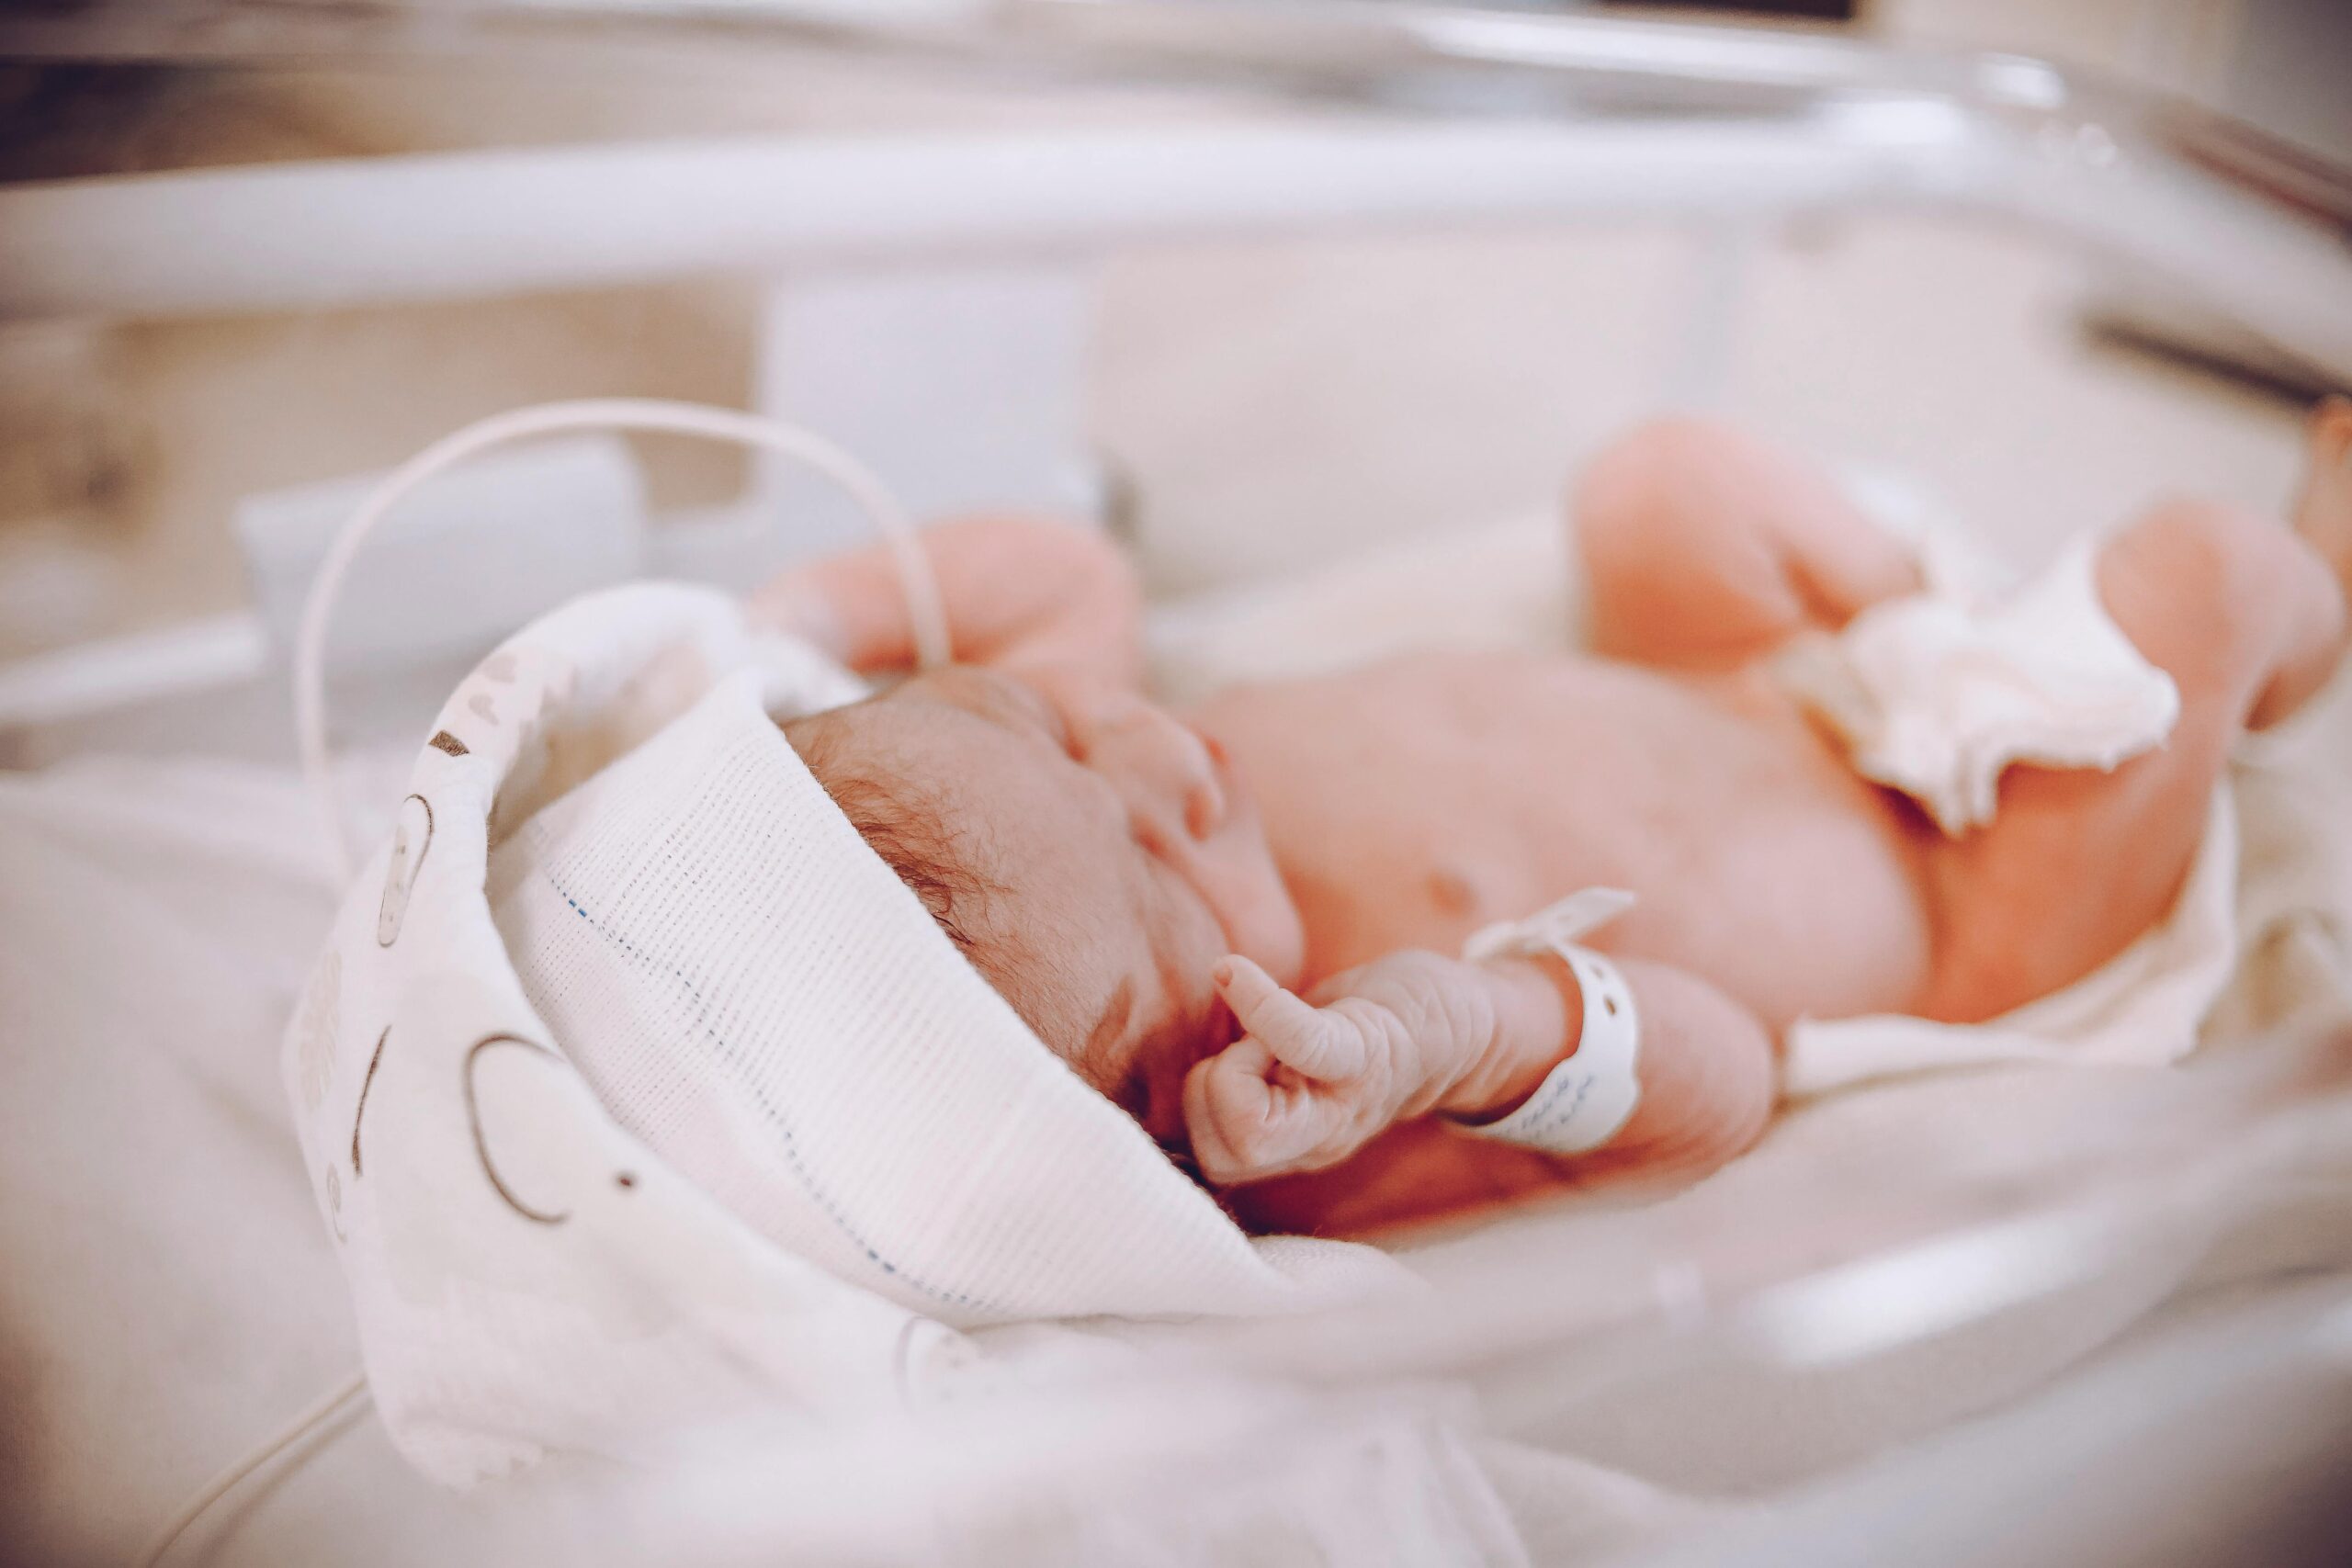 ruggenprik vergroot de kans op zuurstoftekort bij een baby